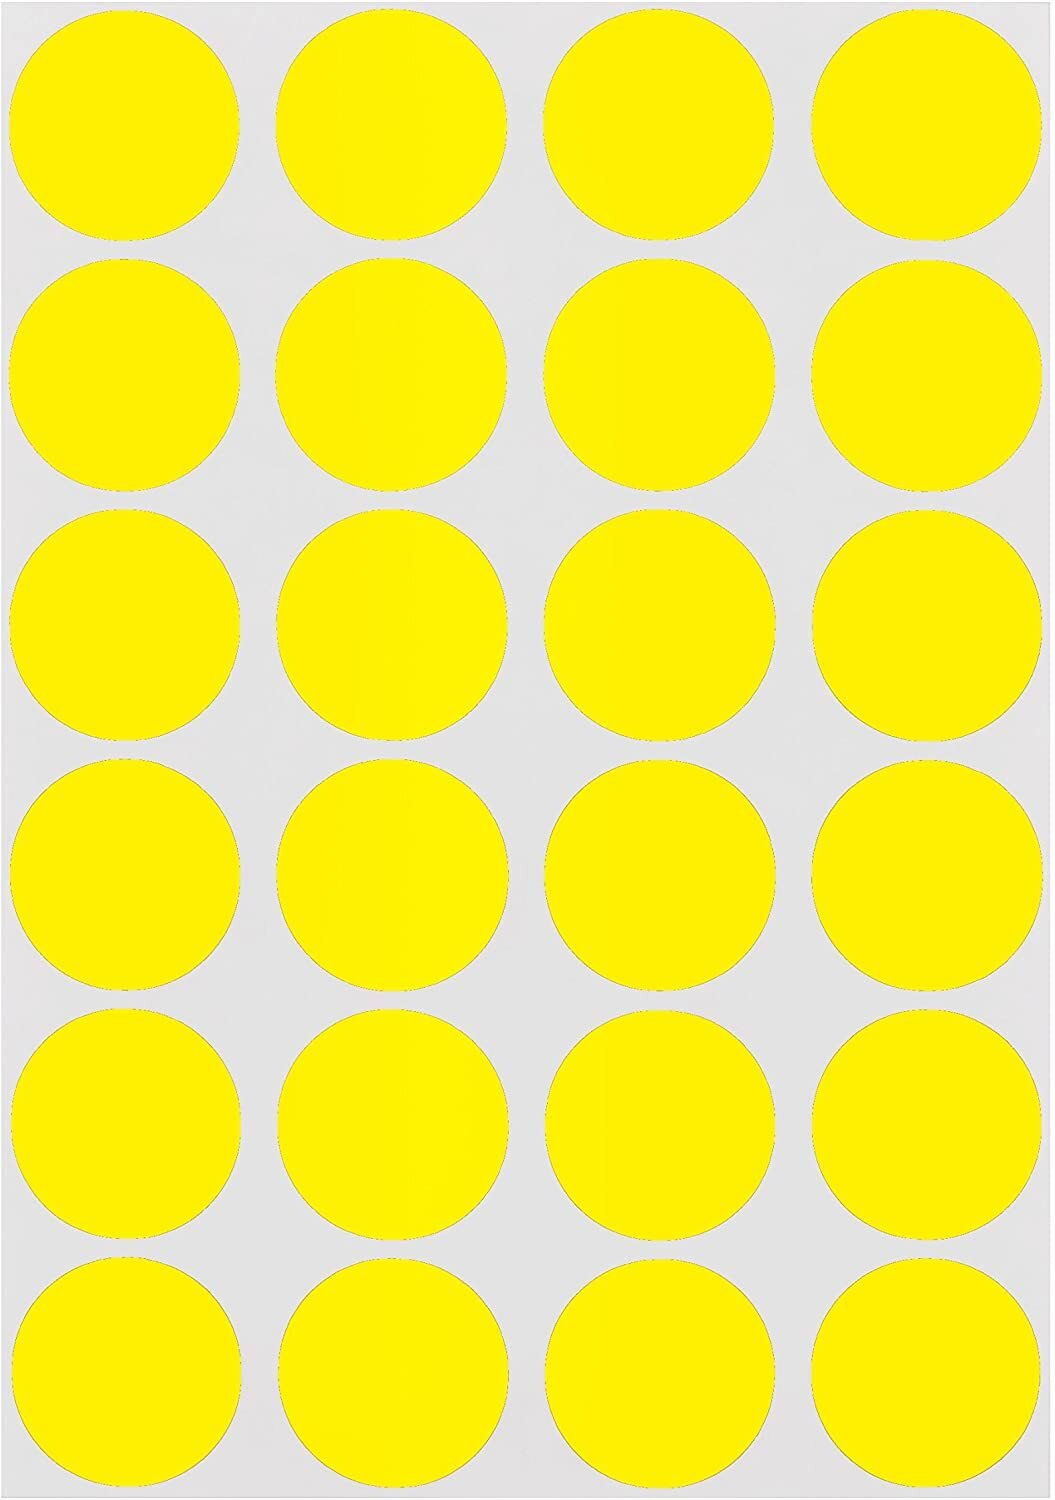 Много маленьких кругов. Желтый круг. Желтые кружочки. Круг желтого цвета. Цветные кружочки.